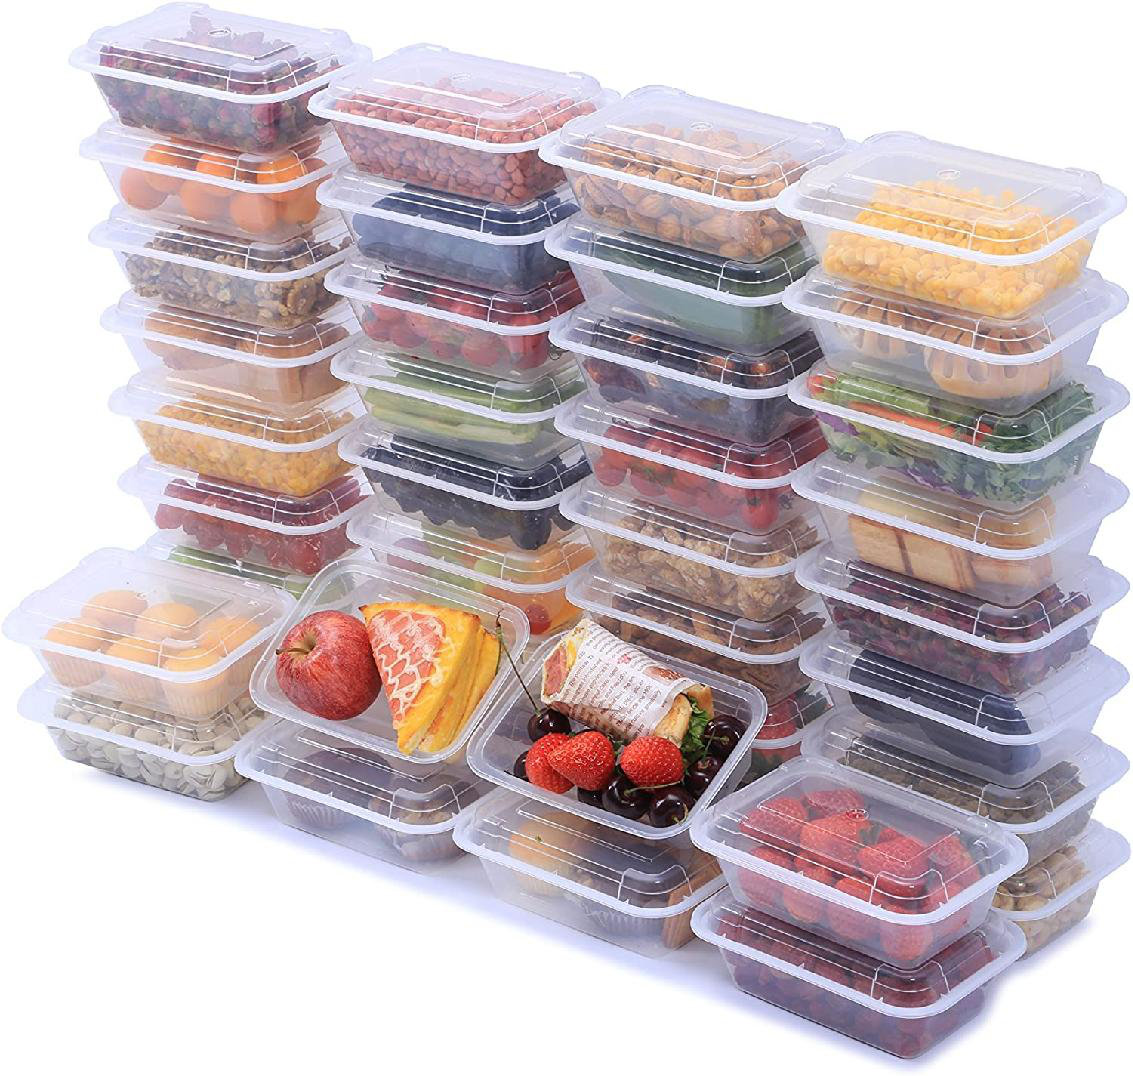 https://assets.wfcdn.com/im/02702493/compr-r85/2111/211180961/bethney-plastic-40-container-food-storage-set.jpg